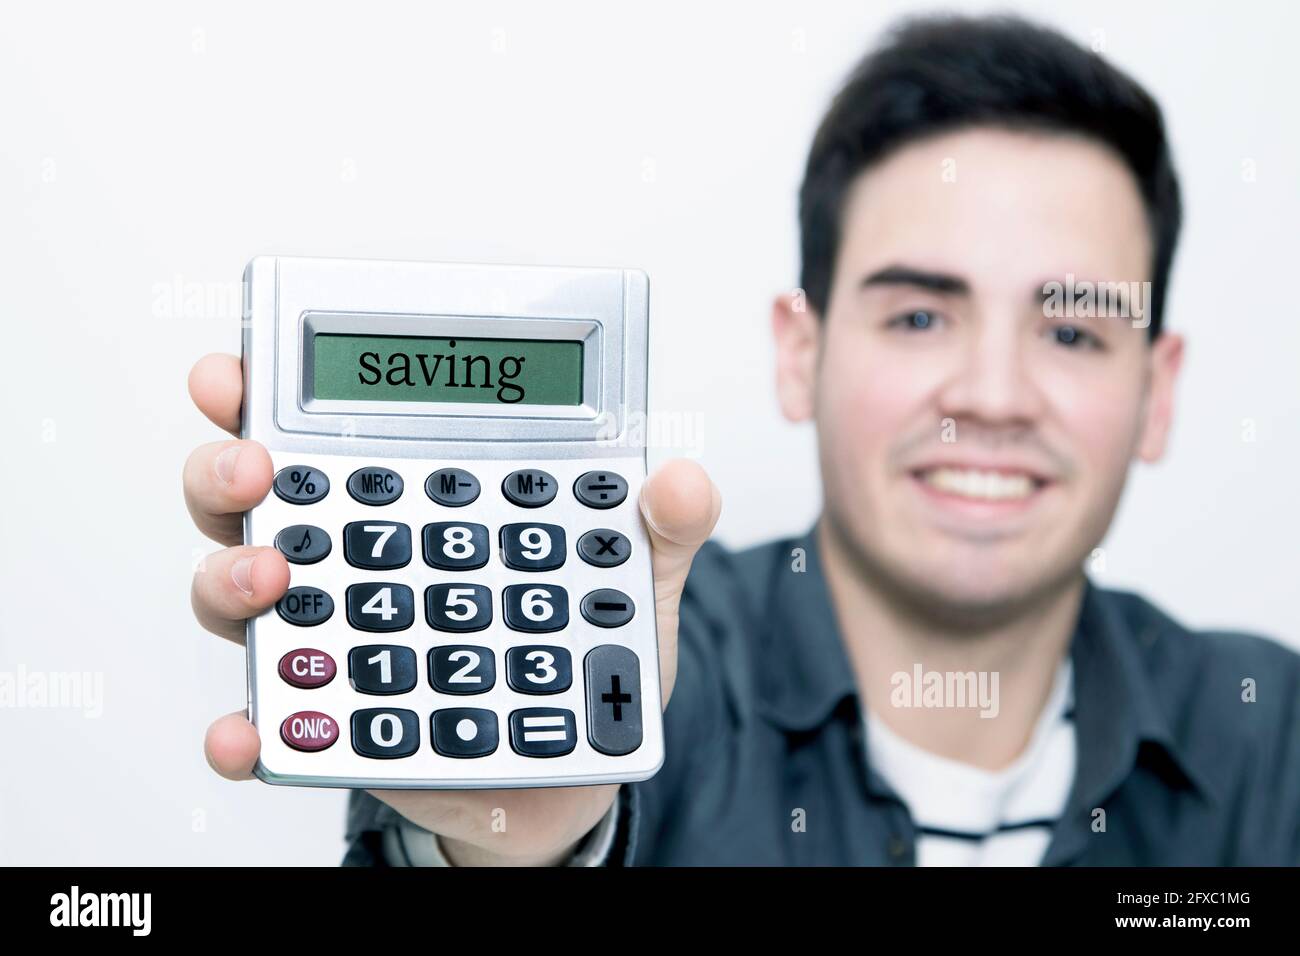 calculatrice dans le premier plan avec l'homme à l'arrière-plan souriant Banque D'Images